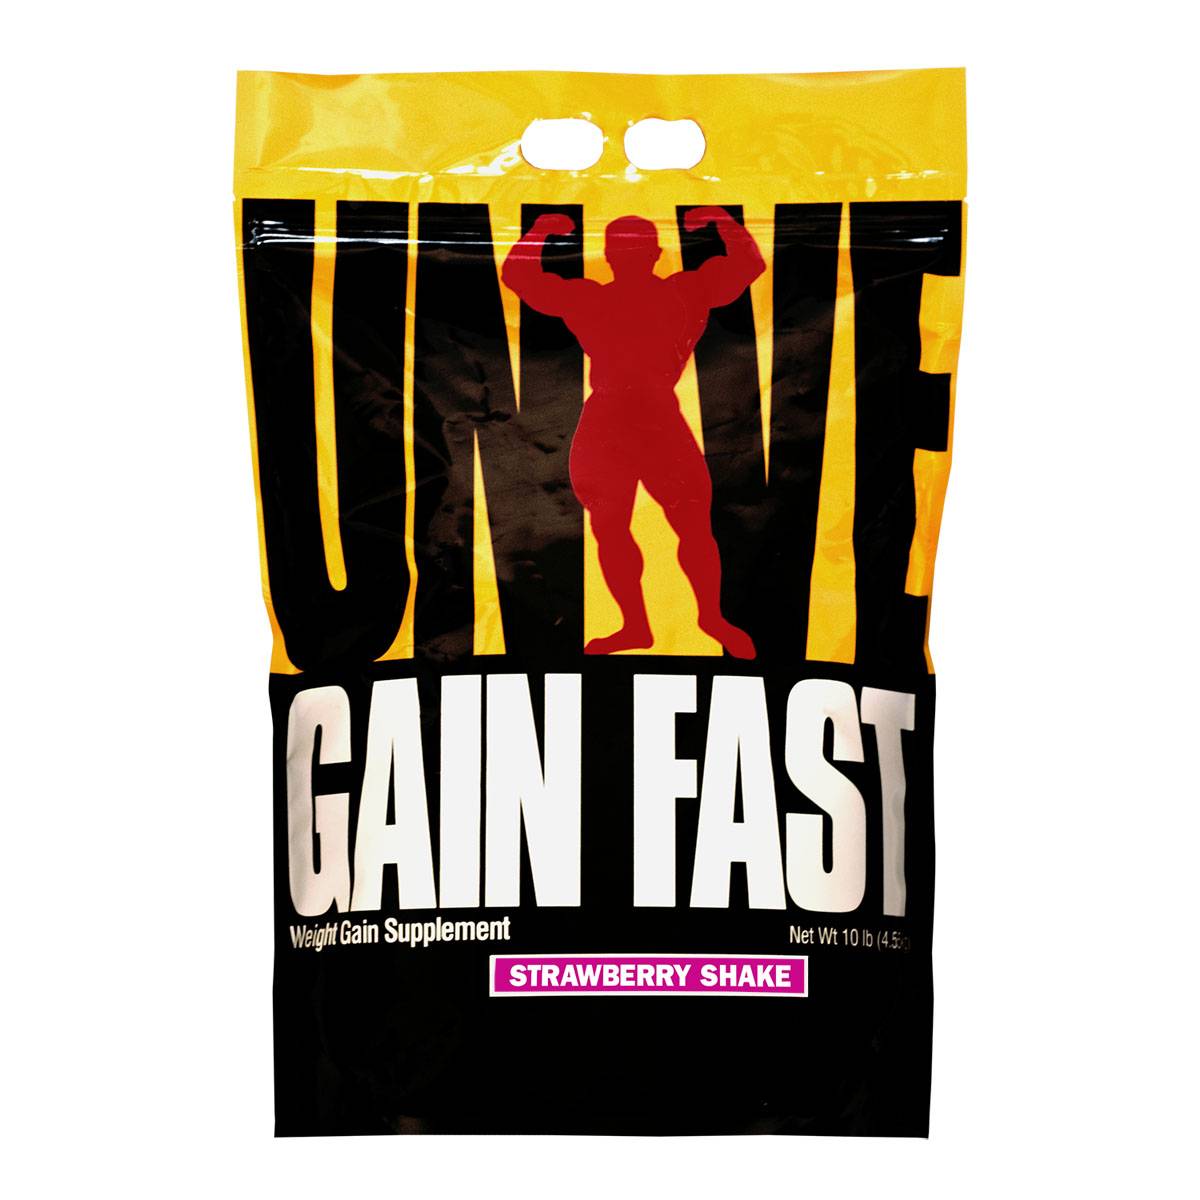 Gain fast 3100 от universal nutrition: как принимать, состав и отзывы